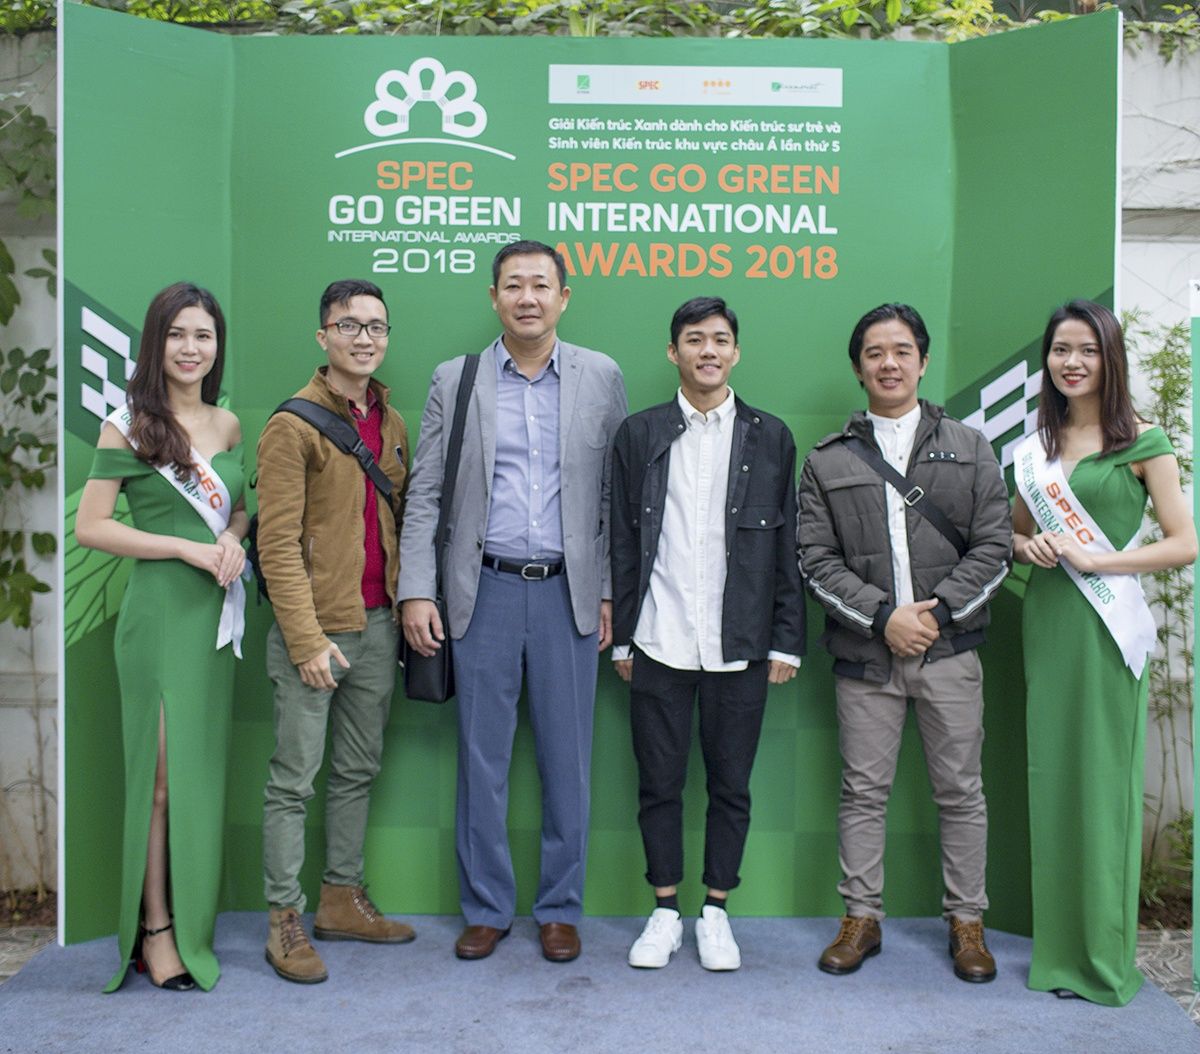 Spec Go Green 2019 | Thầy Nguyễn Hoàng Minh Vũ: “Các bạn SV hiện nay rất chủ động và tích cực trong việc học tập cũng như nghiên cứu kiến thức, trong đó có “Kiến Trúc Xanh”